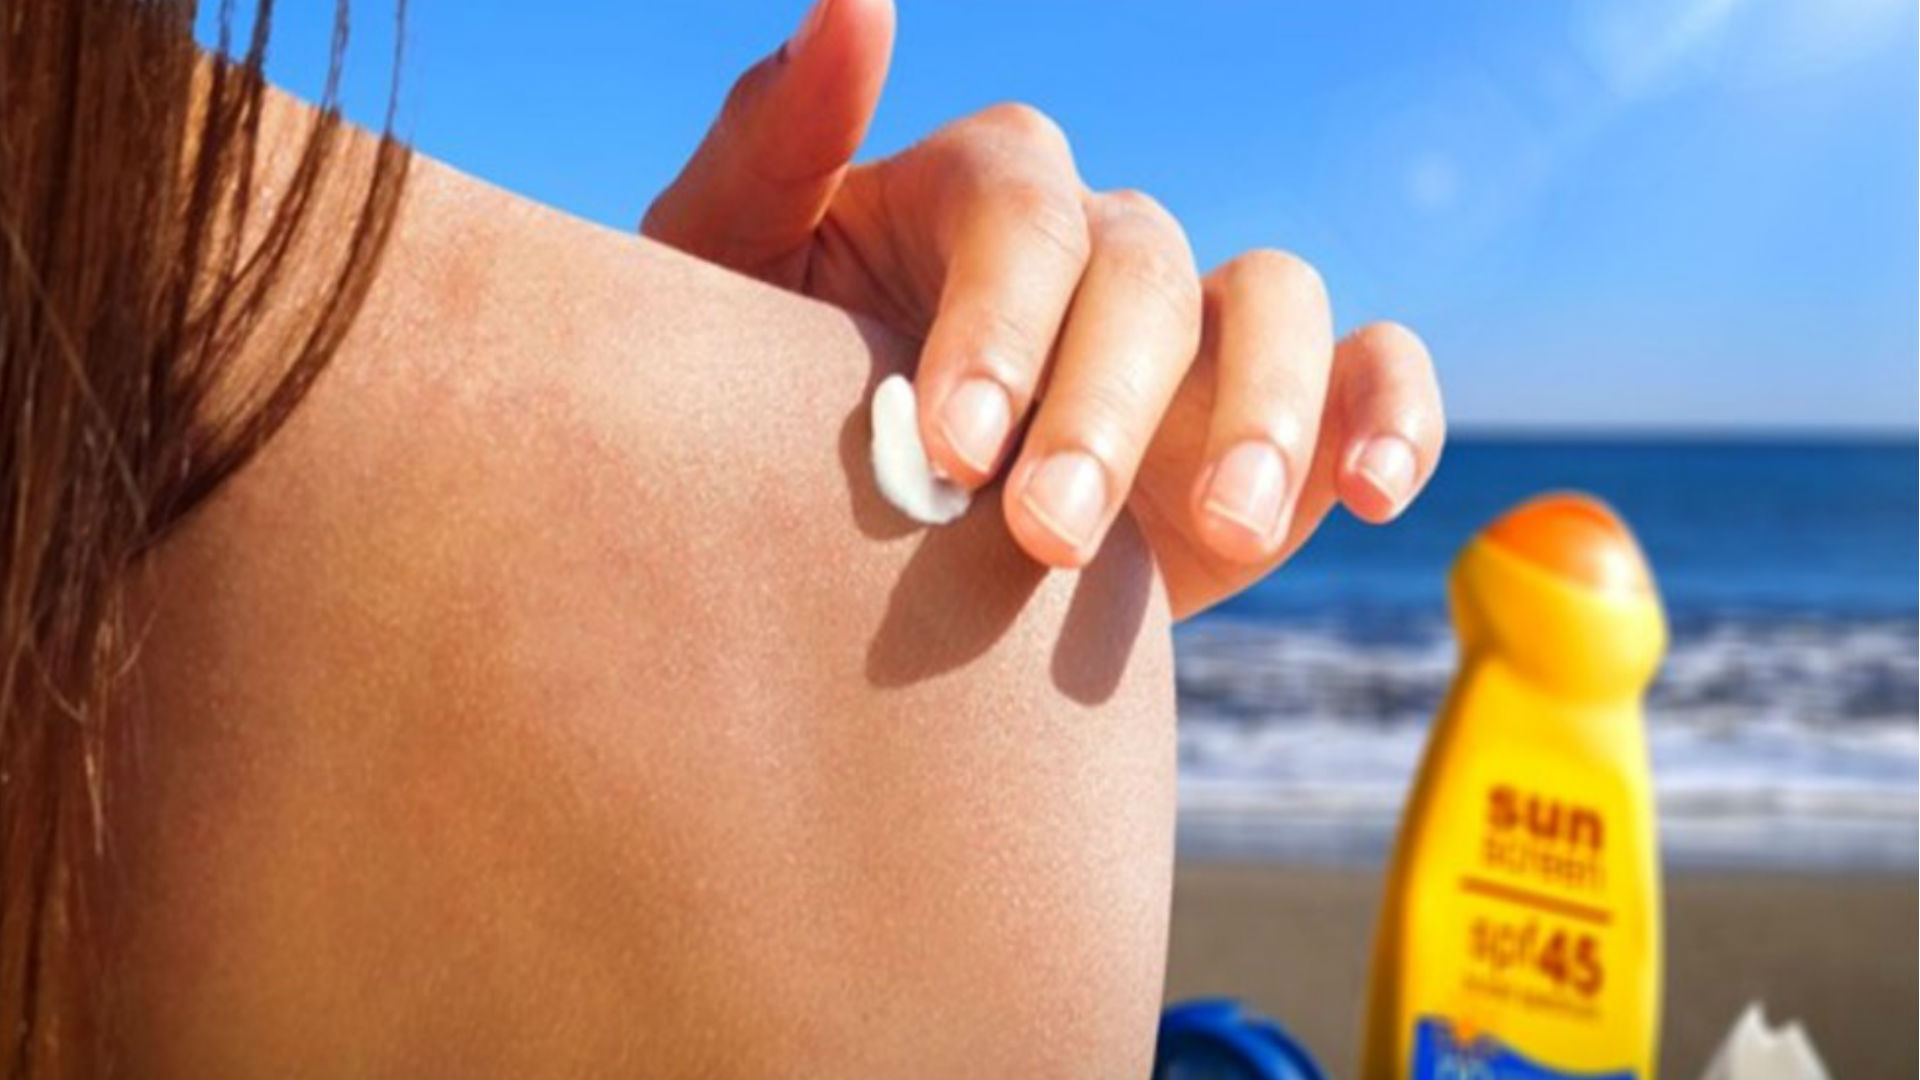 Skin Care Tips: त्योहारों के मौसम में कैसे पाएं दमकती हुई त्वचा, जानिए कुछ आसान सी स्किन केयर टिप्स